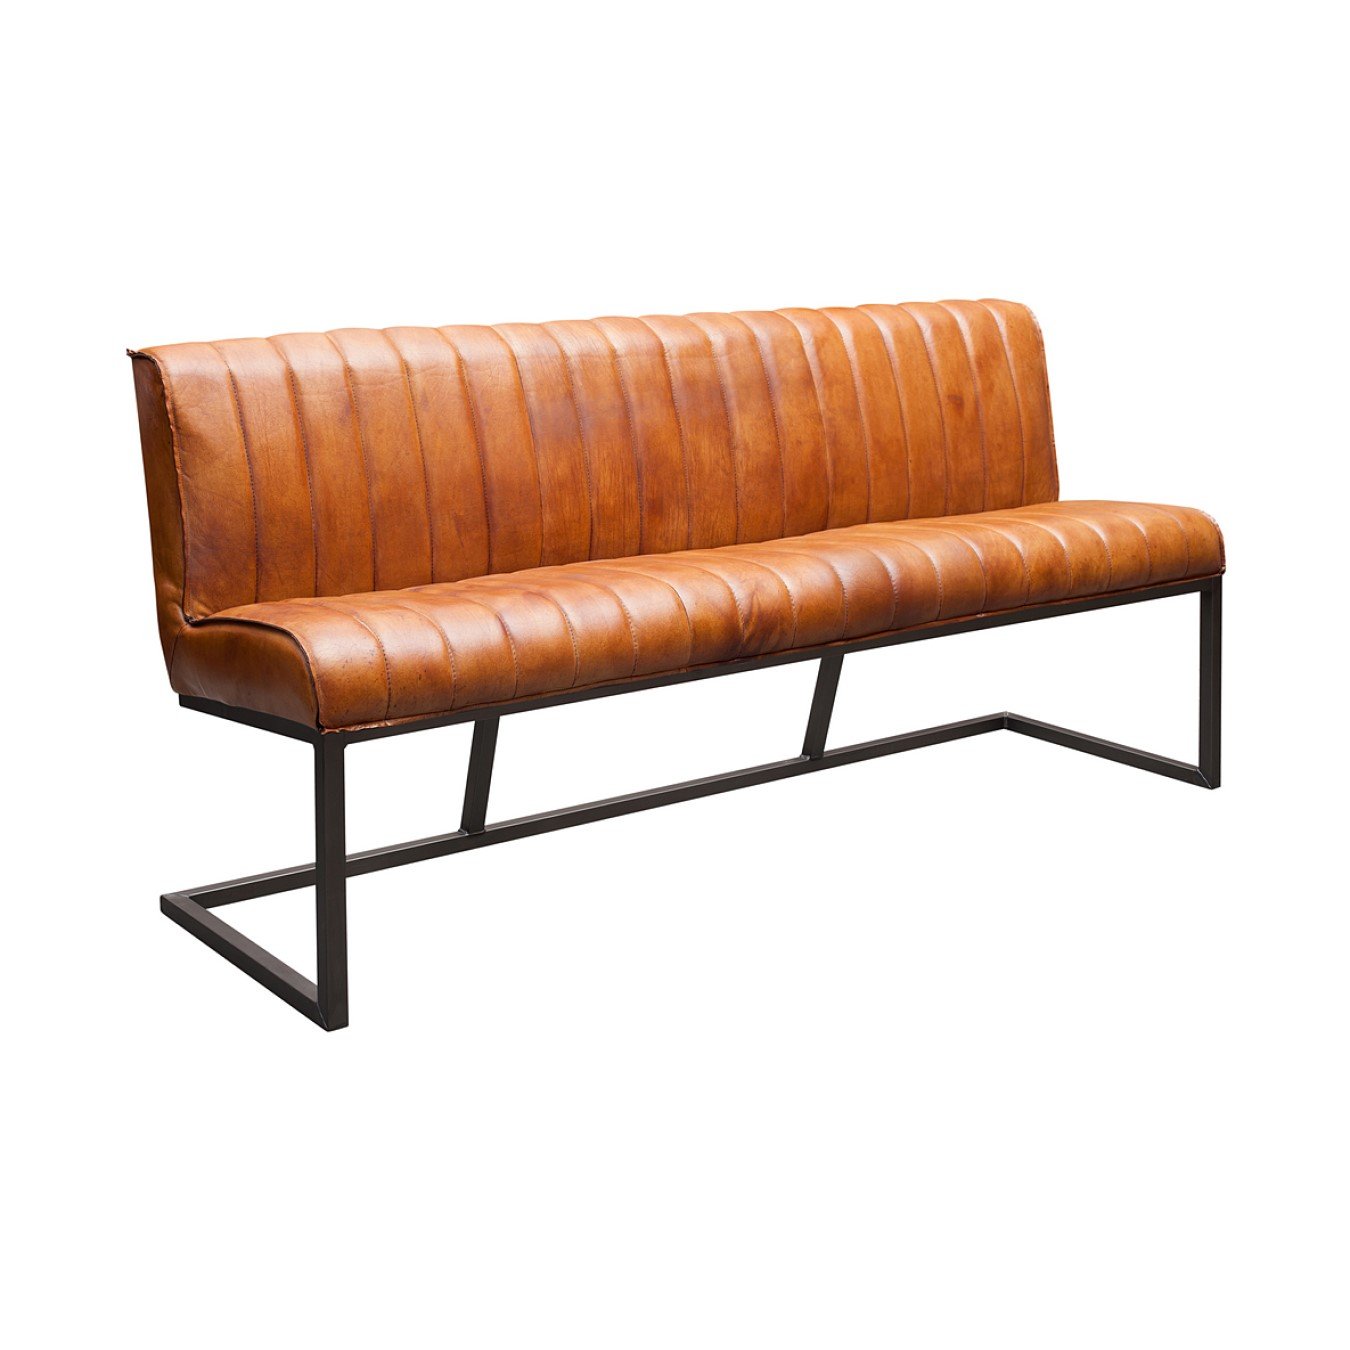 Sitzbank mit Nähte auf der Sitz und Rückenlehne Cognac Farbe / Sitzbank Büffelleder Industrie Design | Modell IVY HOME24